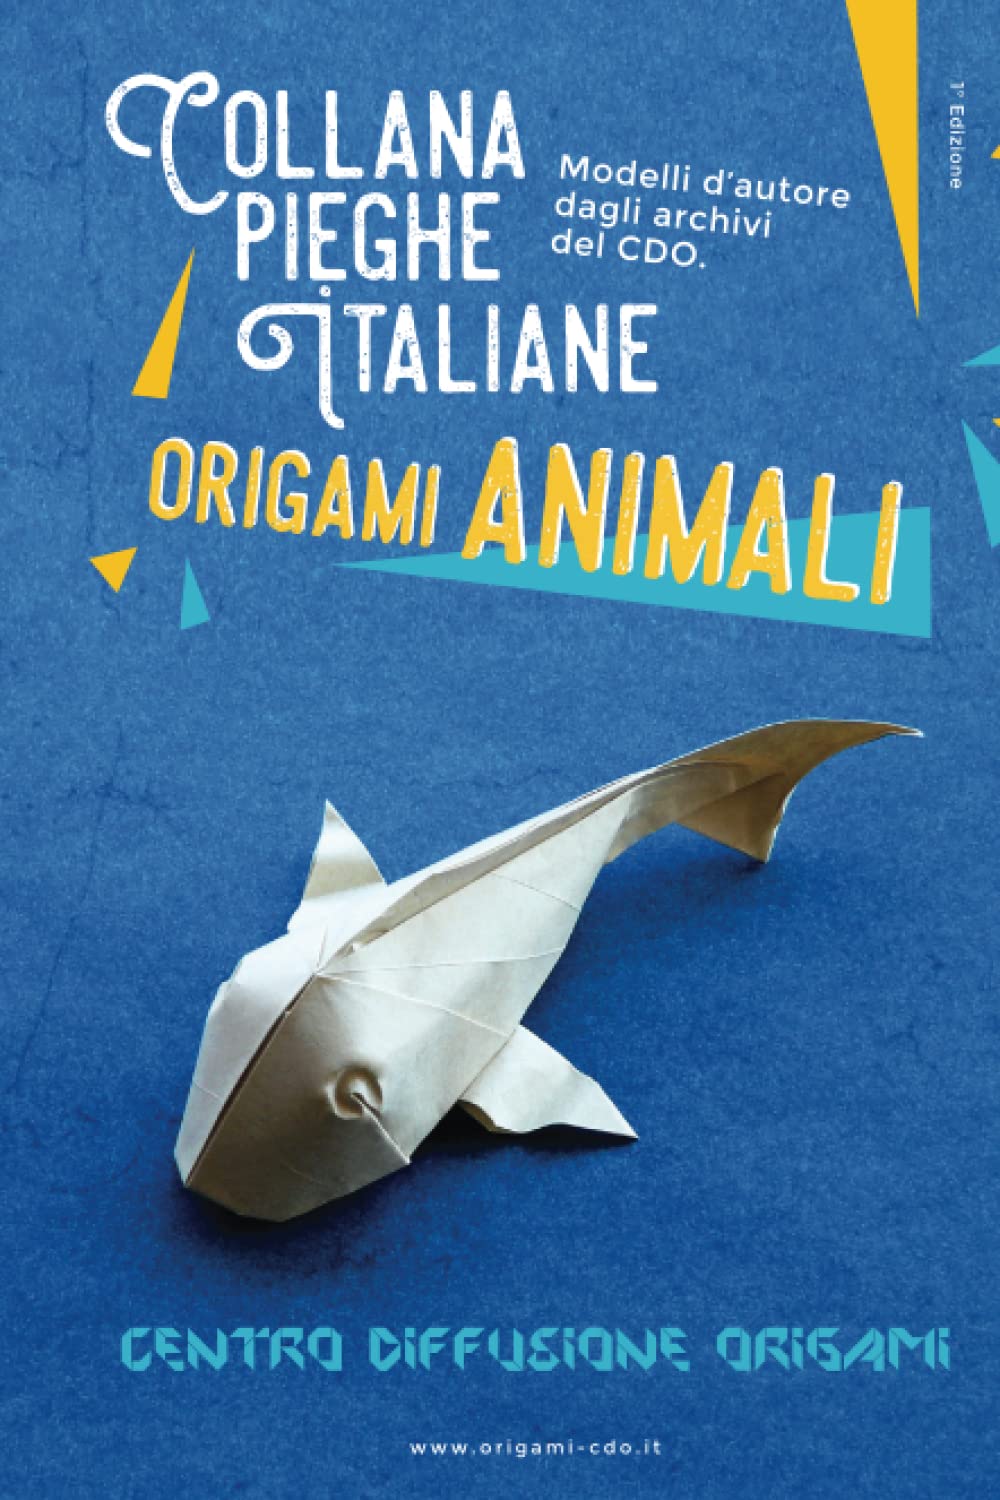 Collana pieghe Italiane - origami ANIMALI : page 92.